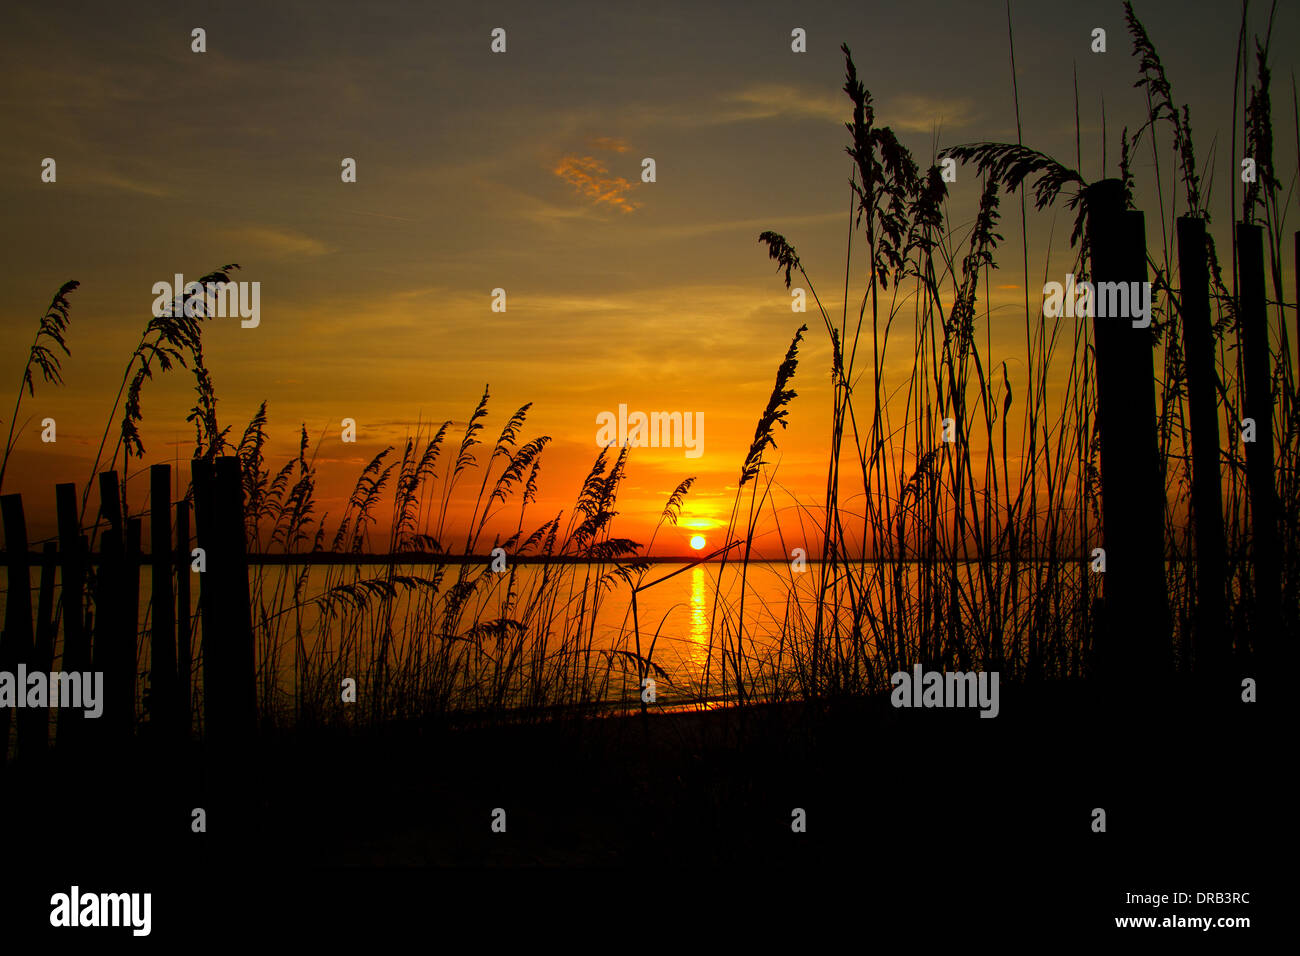 Le soleil se couche entre l'avoine et le sable de la mer au cours d'escrime Amelia, Fernandina Beach, Floride Banque D'Images